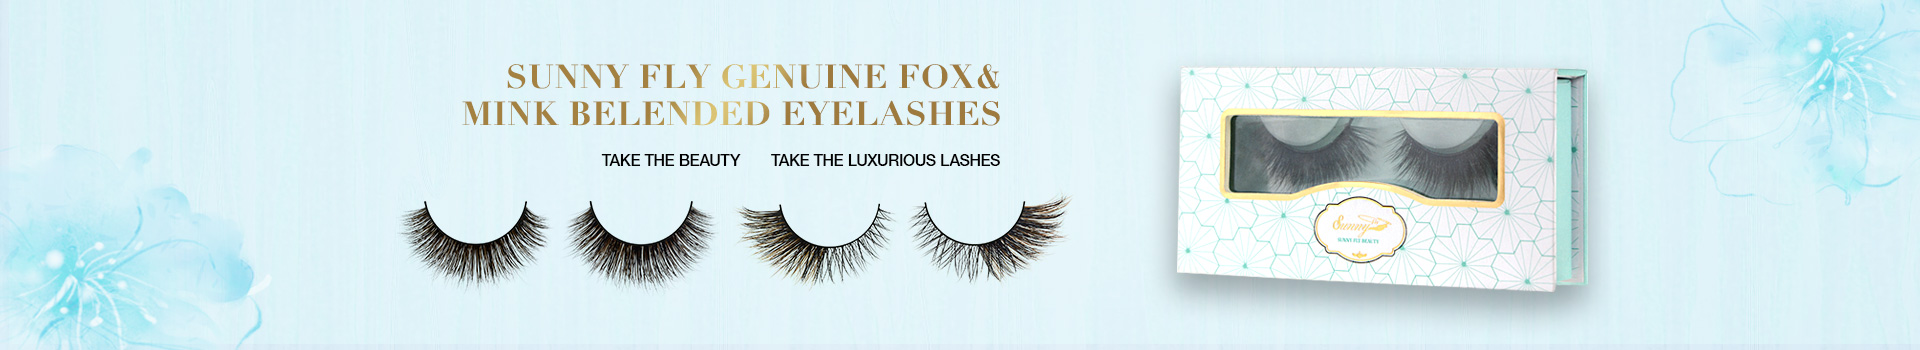 Fox & Mink Fur Blended Eyelashes FMB14